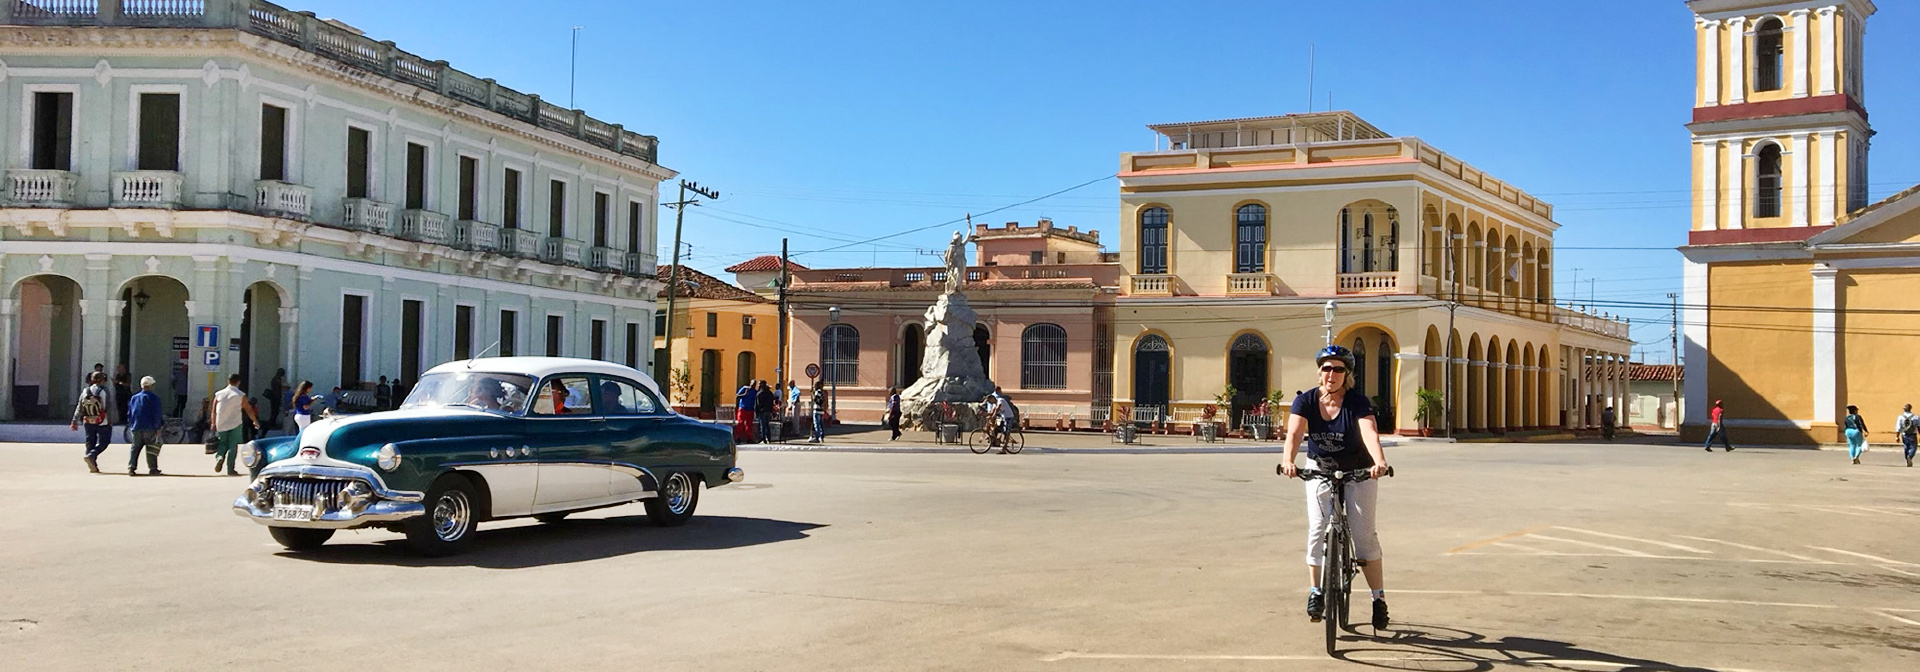 Cuba Bike Tour: Bicycling to Havana